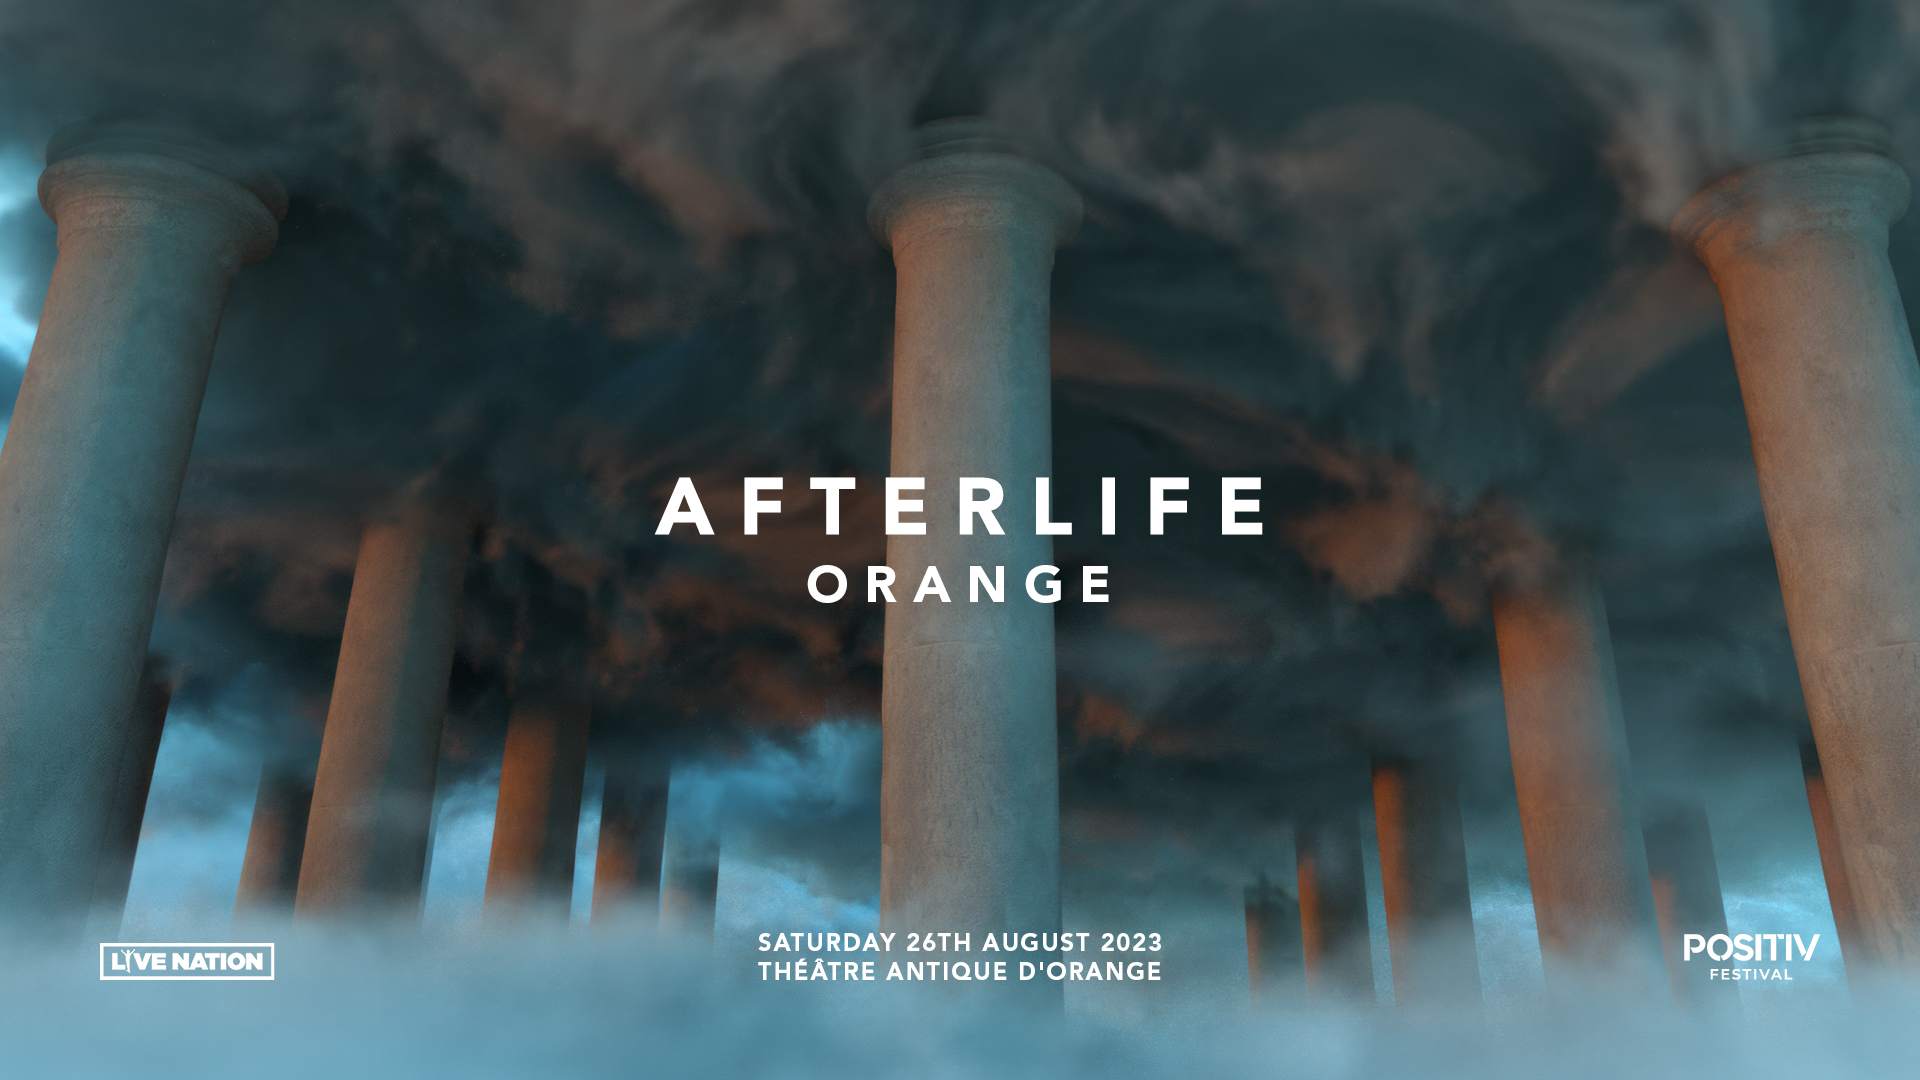 Afterlife Festival France 🇫🇷 #afterlife #theatreantique